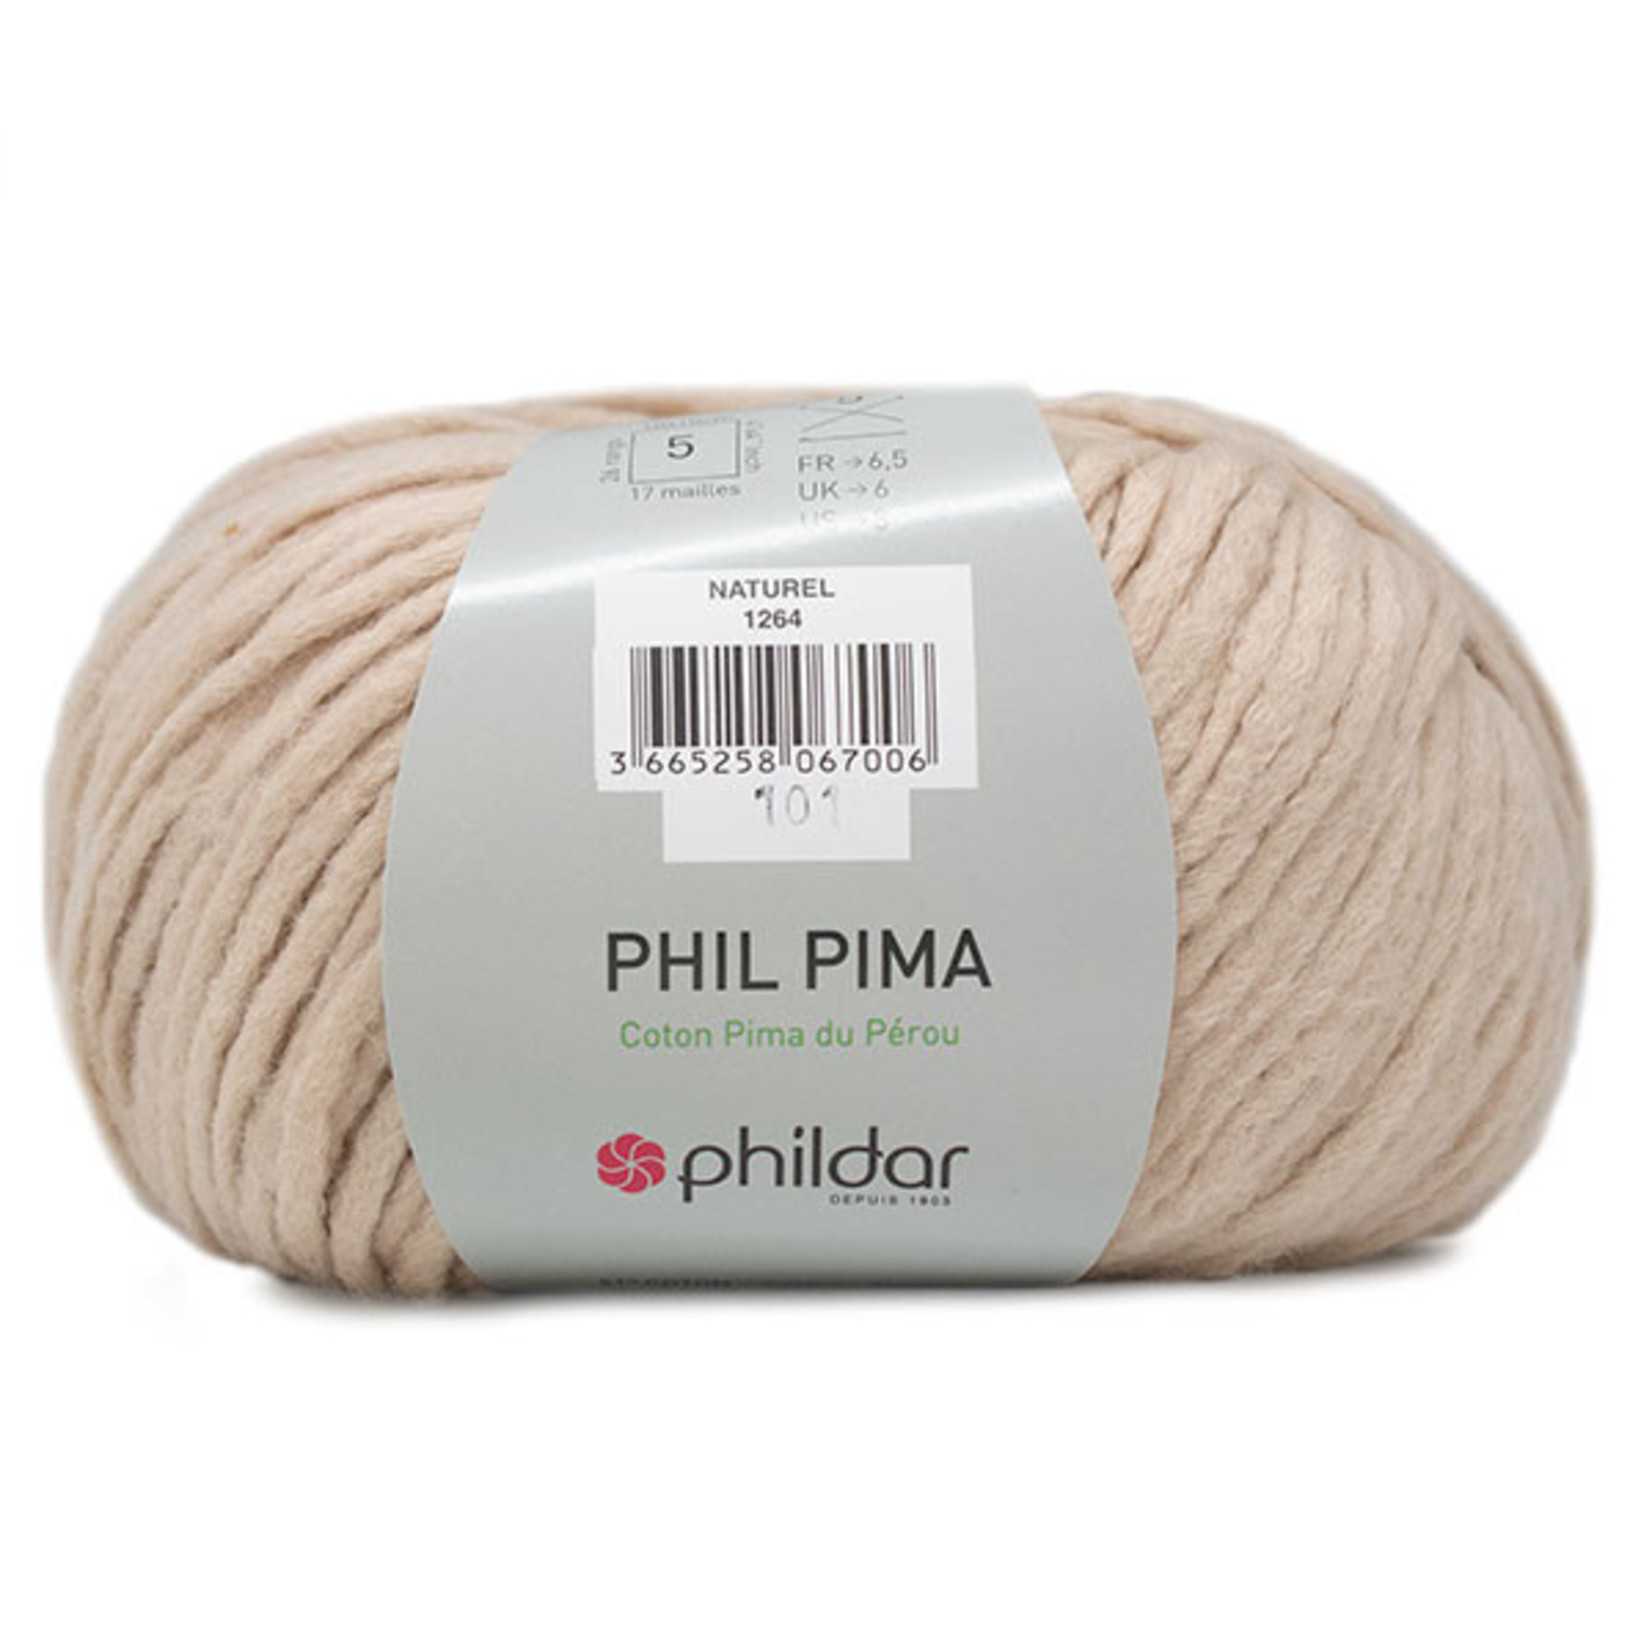 Phildar Phil Pima Naturel